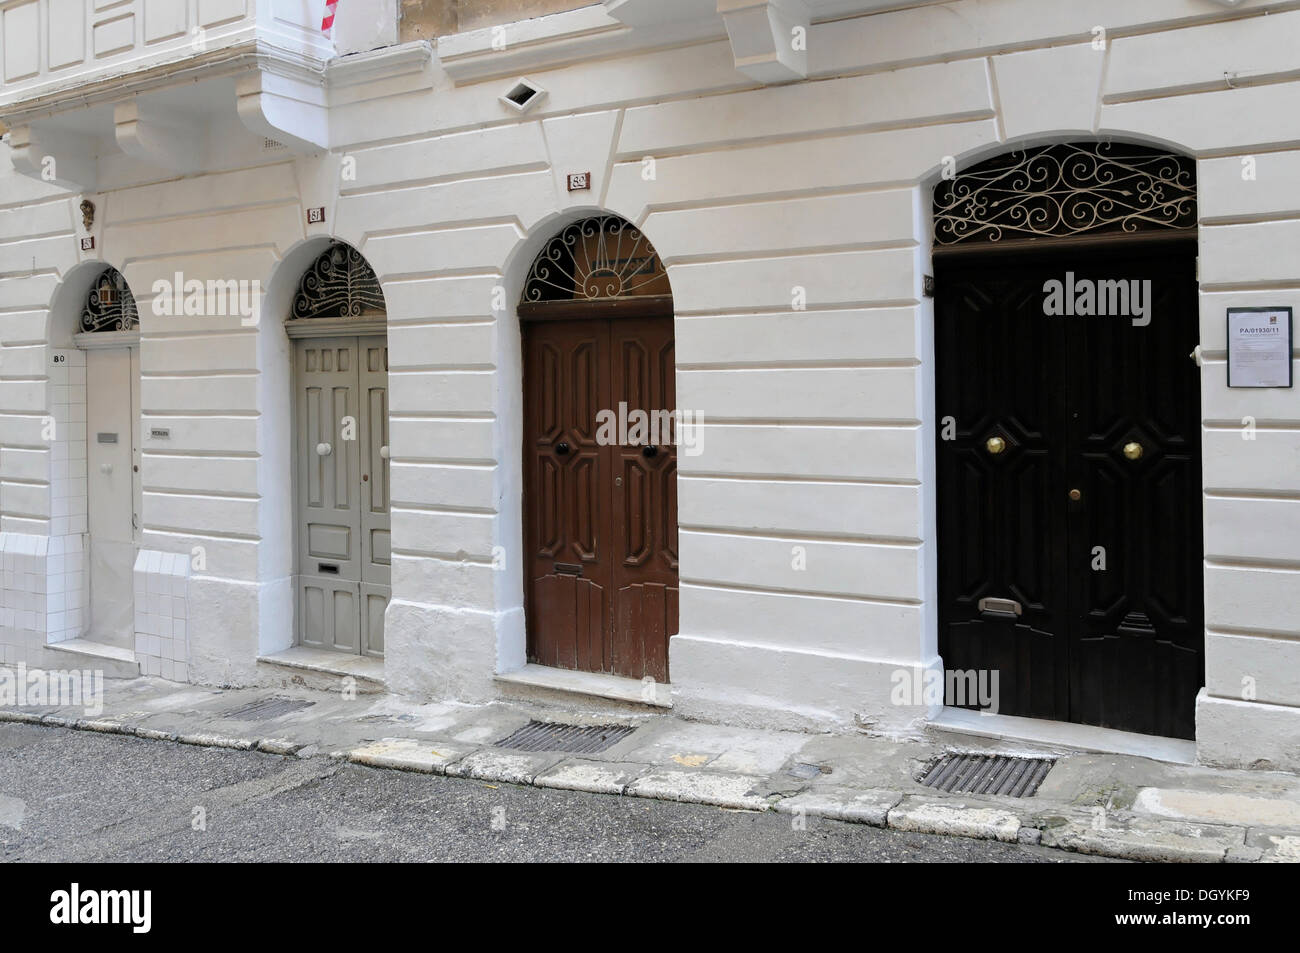 4 doors, St. Ursula Street, old town of Valletta, Malta, Europe Stock Photo